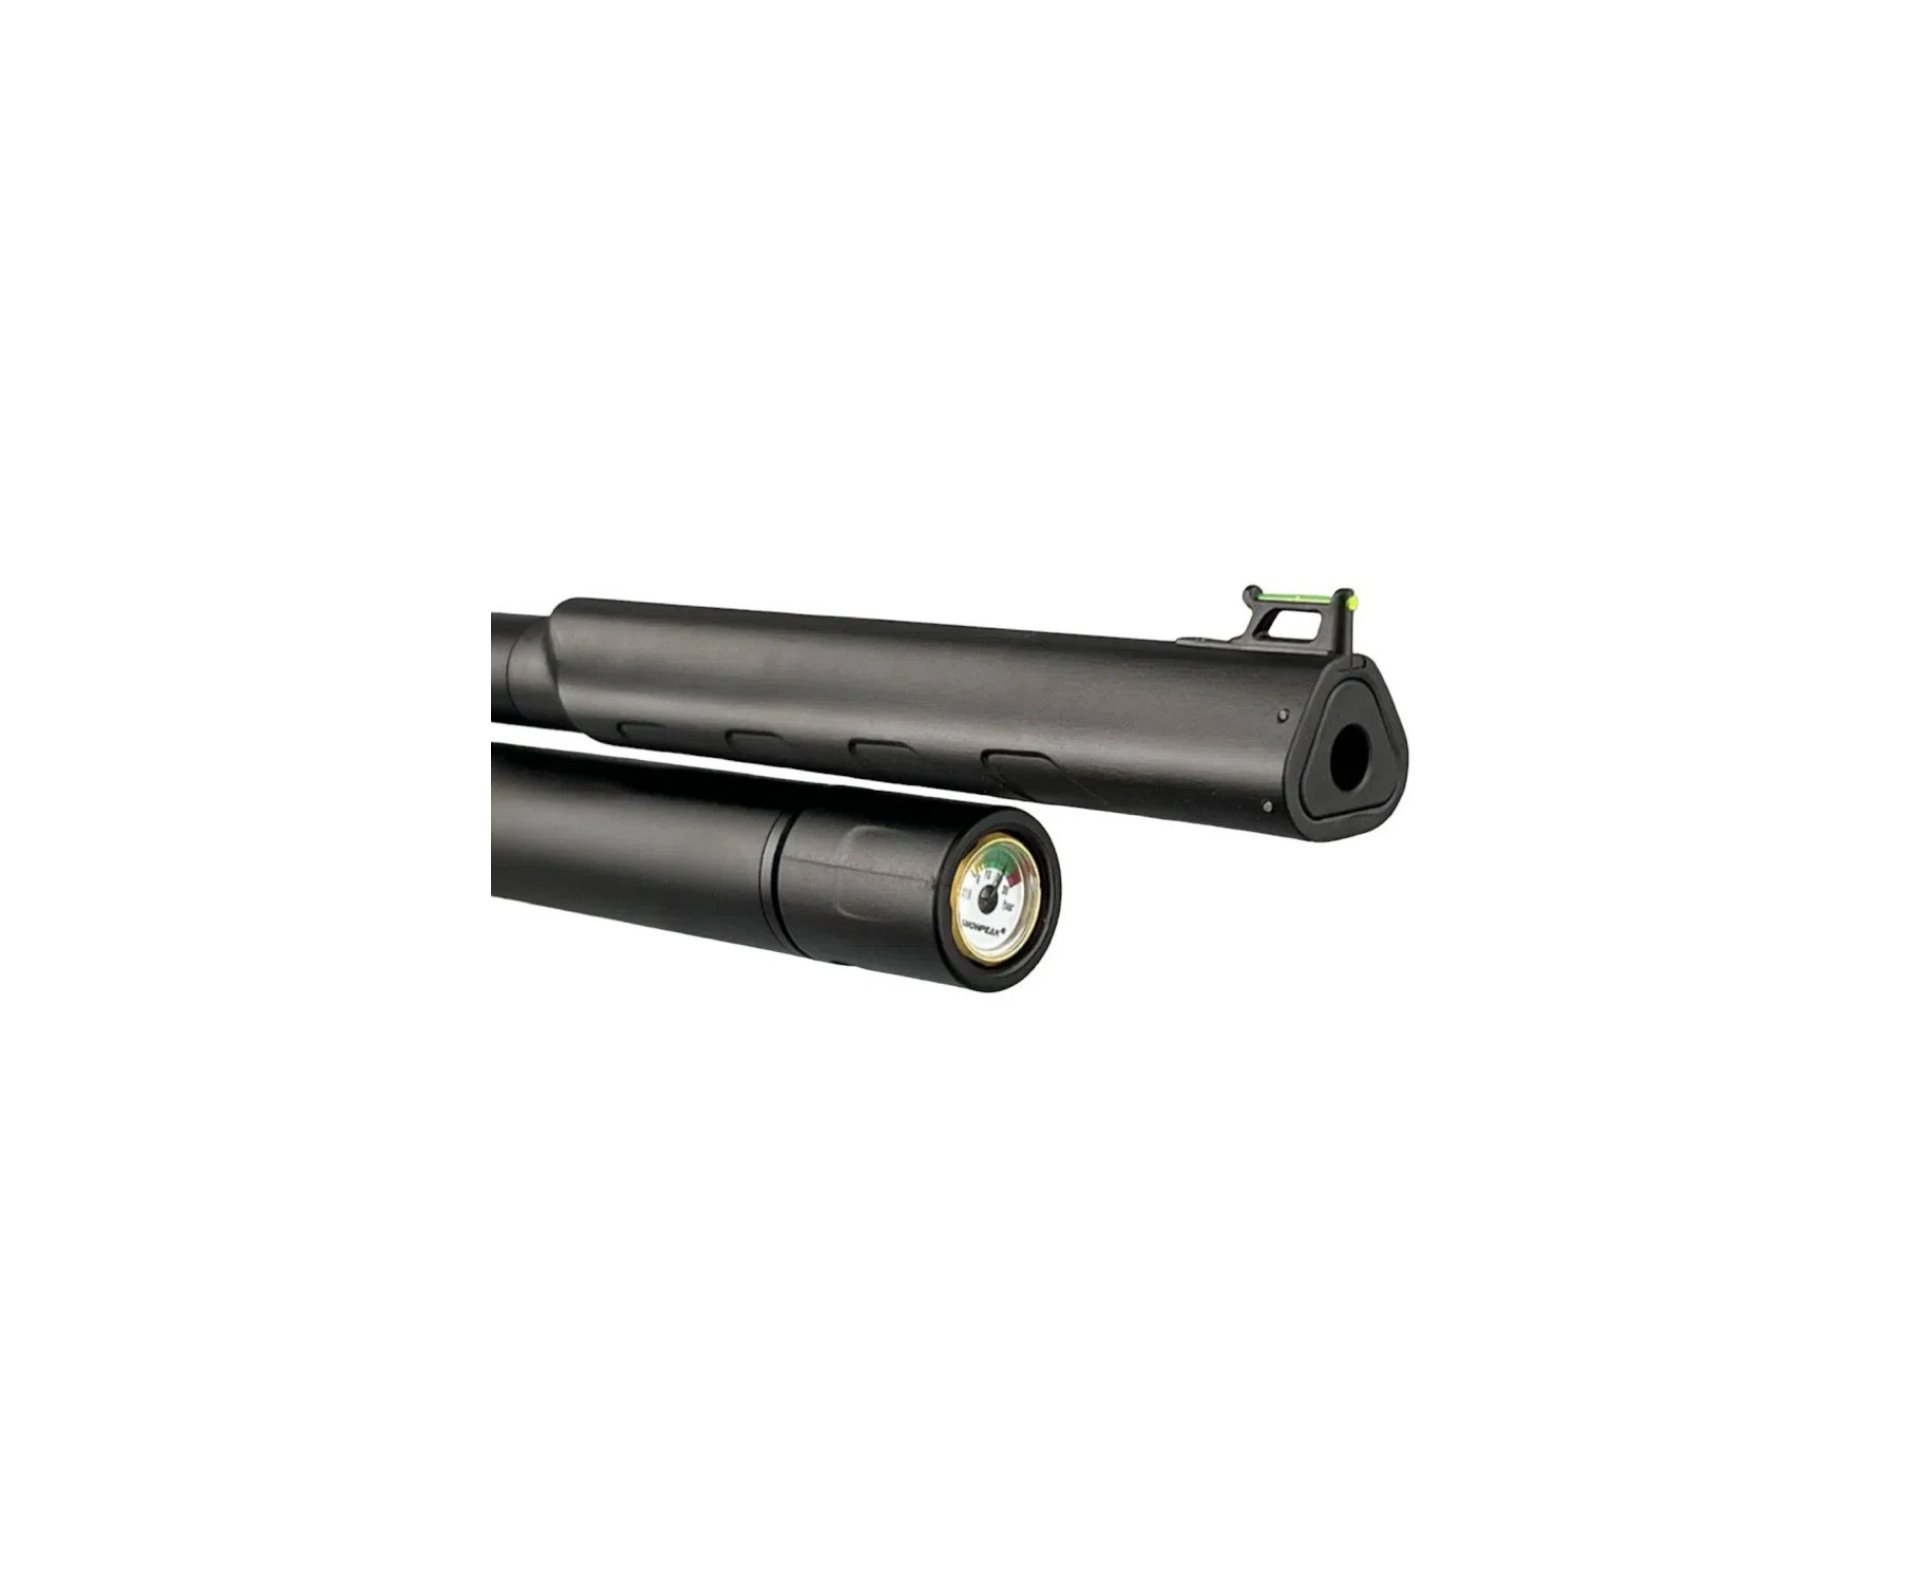 Carabina de Pressão PCP Artemis T-REX 4.5mm com Válvula Reguladora - Fixxar + Luneta 4-16x50 + Mount 22mm